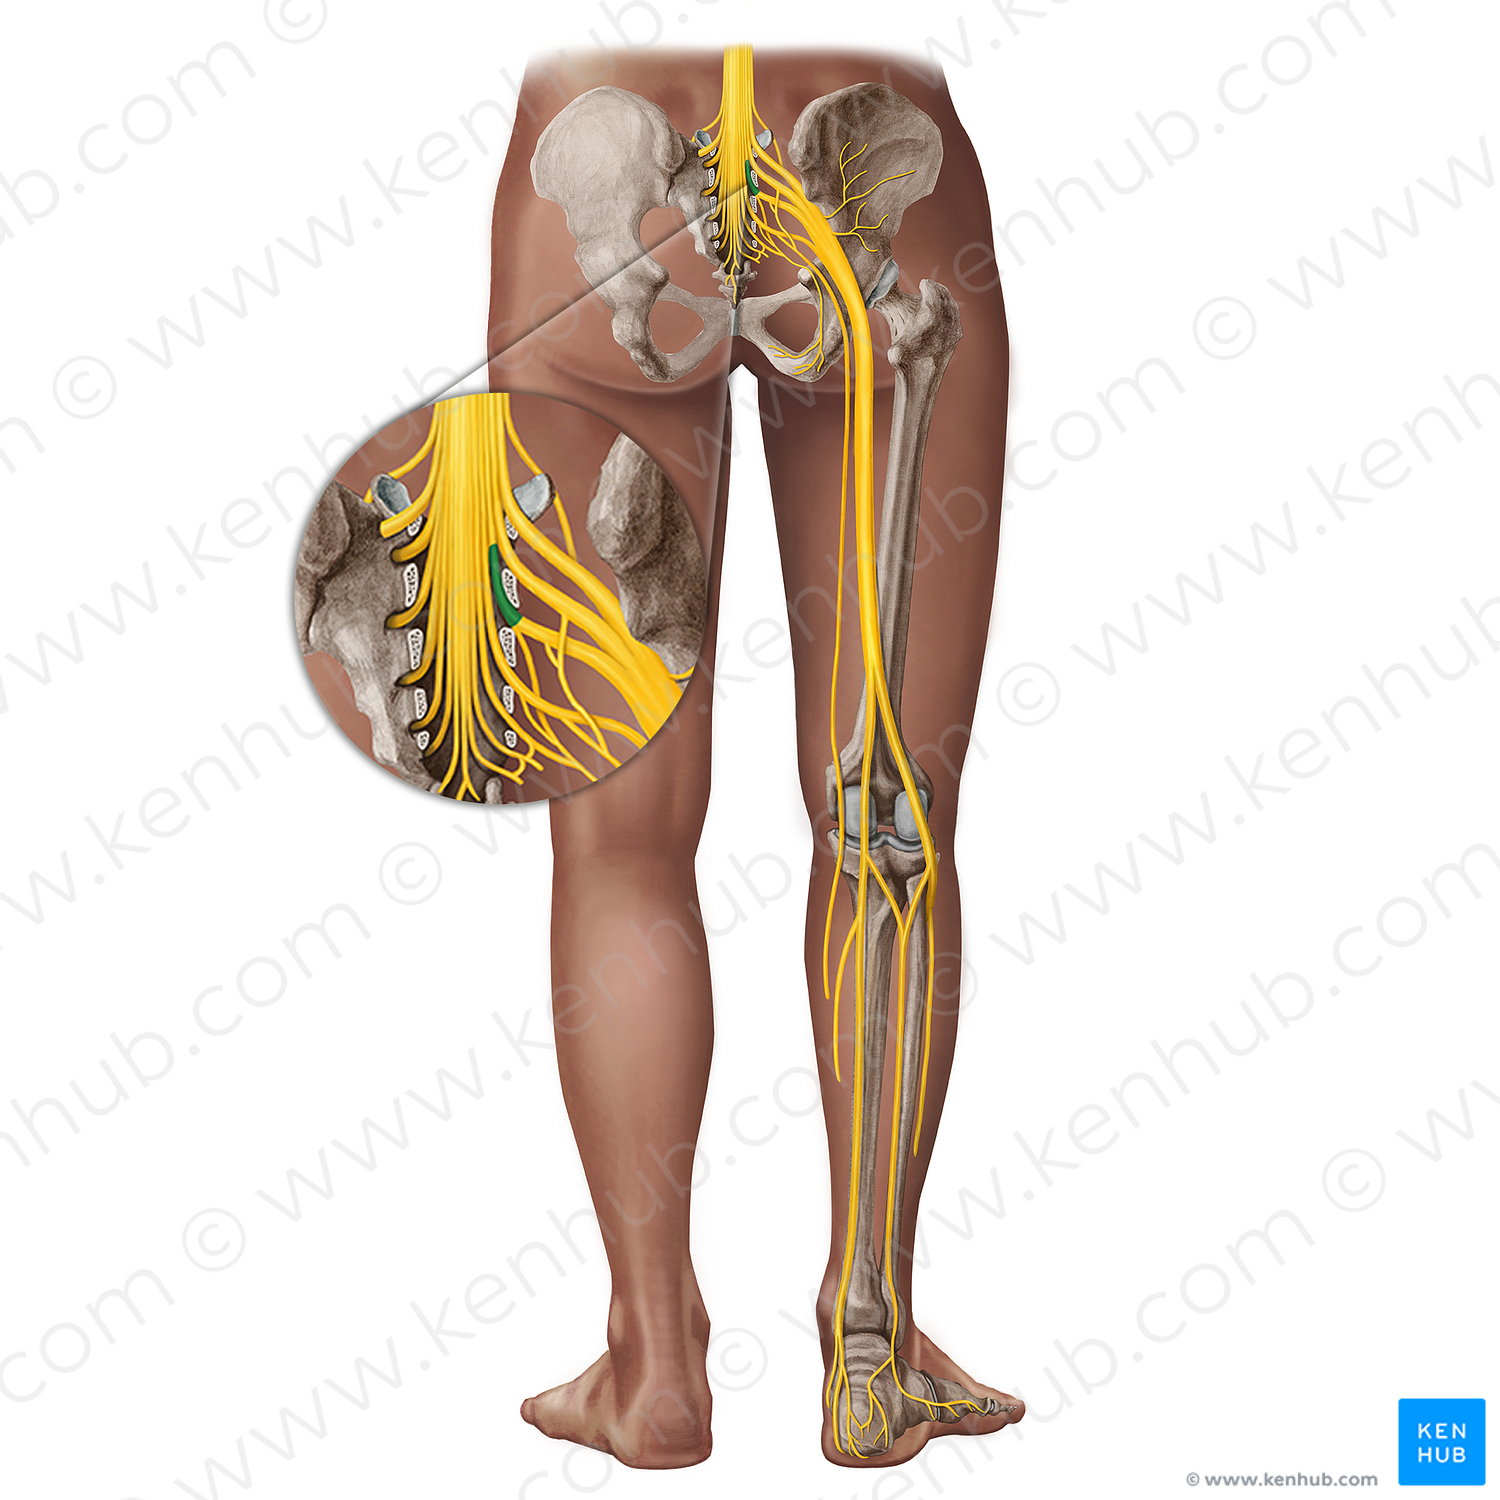 Spinal nerve S2 (#18289)